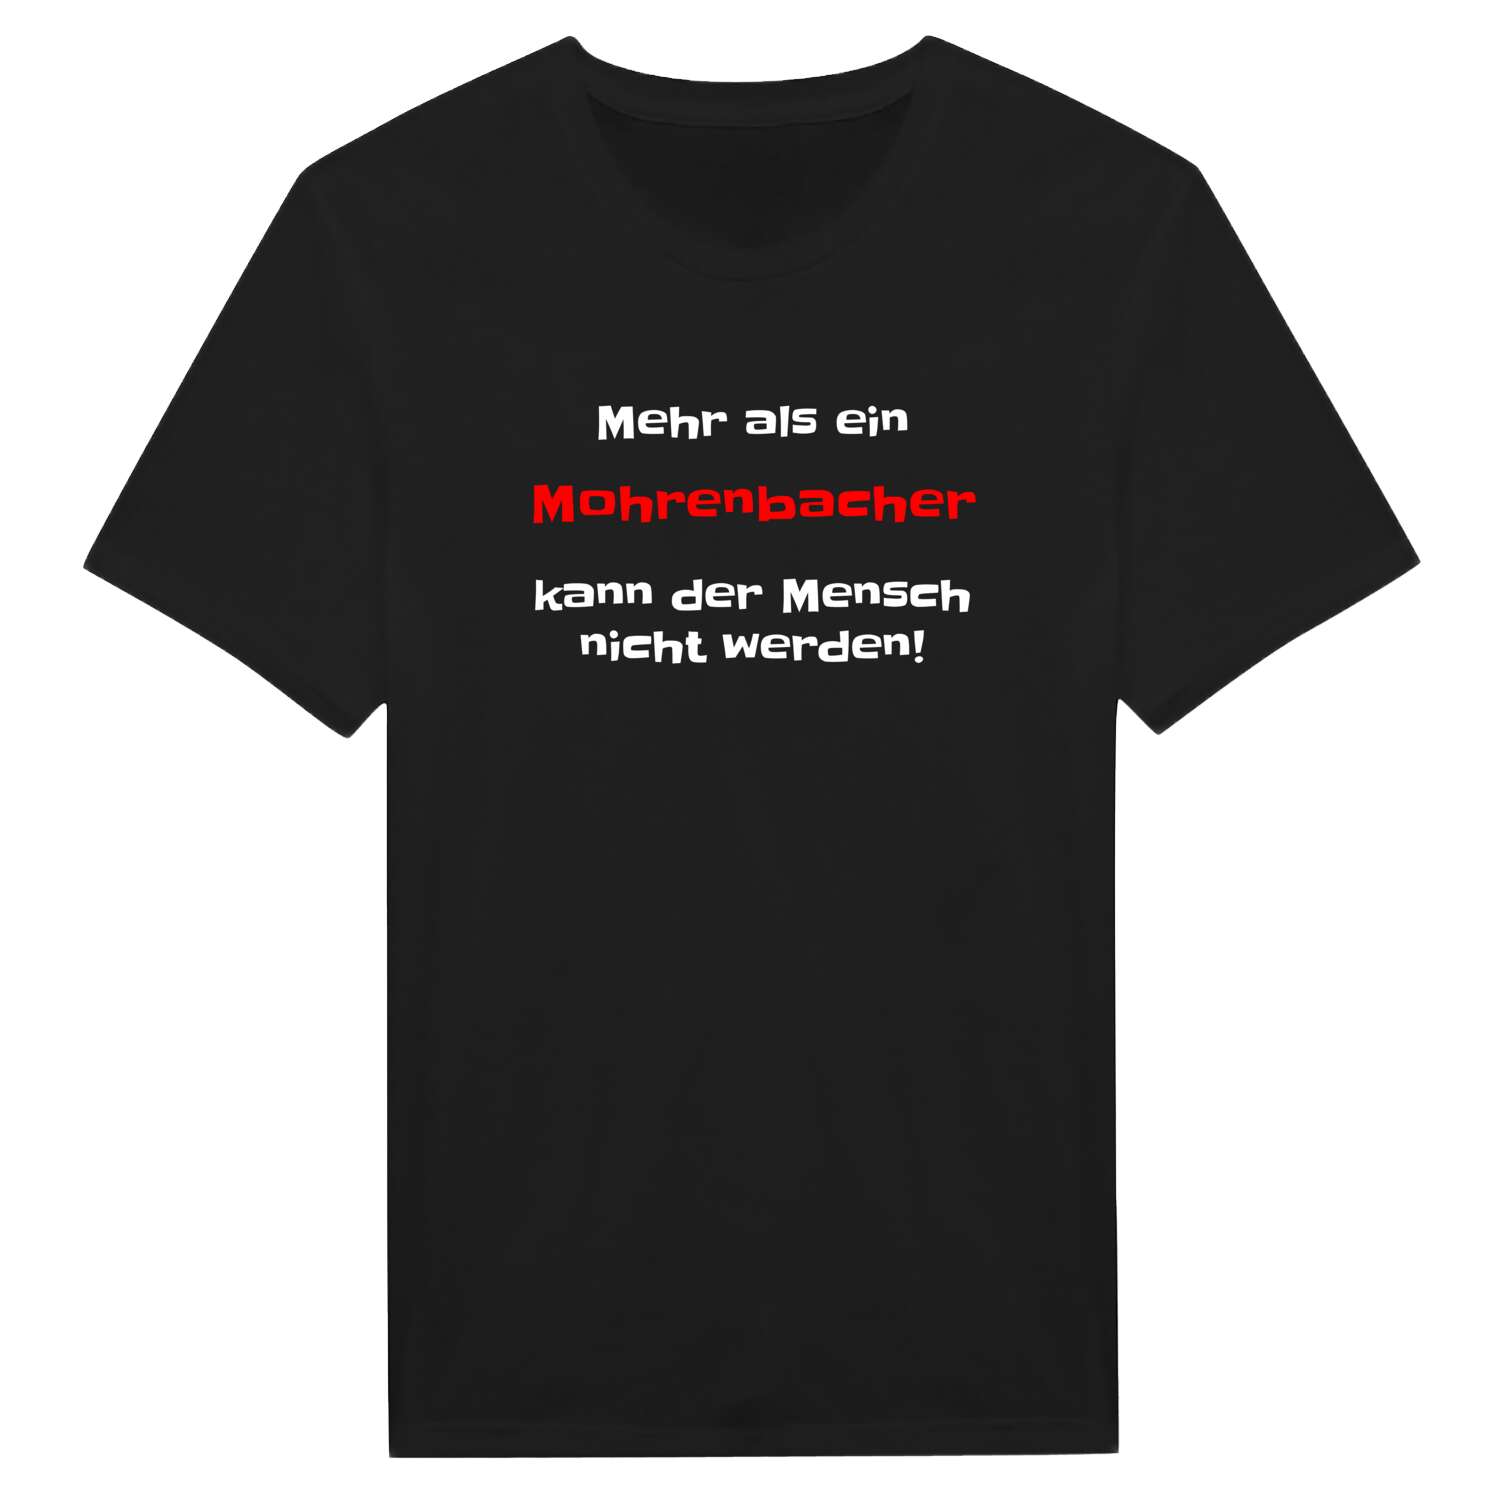 Mohrenbach T-Shirt »Mehr als ein«